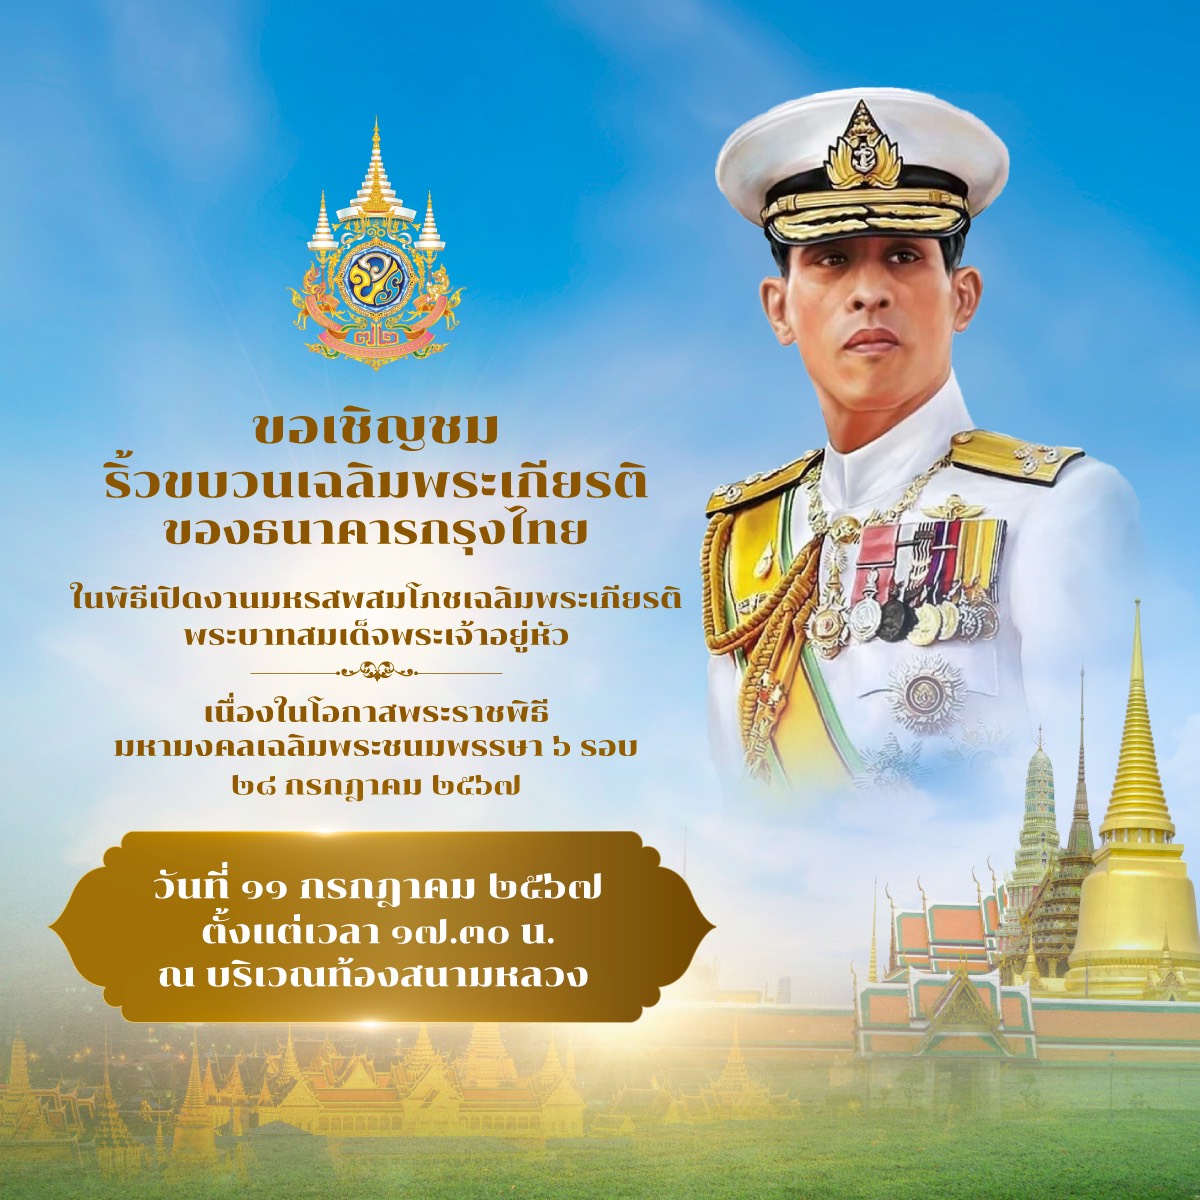 ธนาคารกรุงไทย ขอเชิญชมริ้วขบวนเฉลิมพระเกียรติพระบาทสมเด็จพระเจ้าอยู่หัว